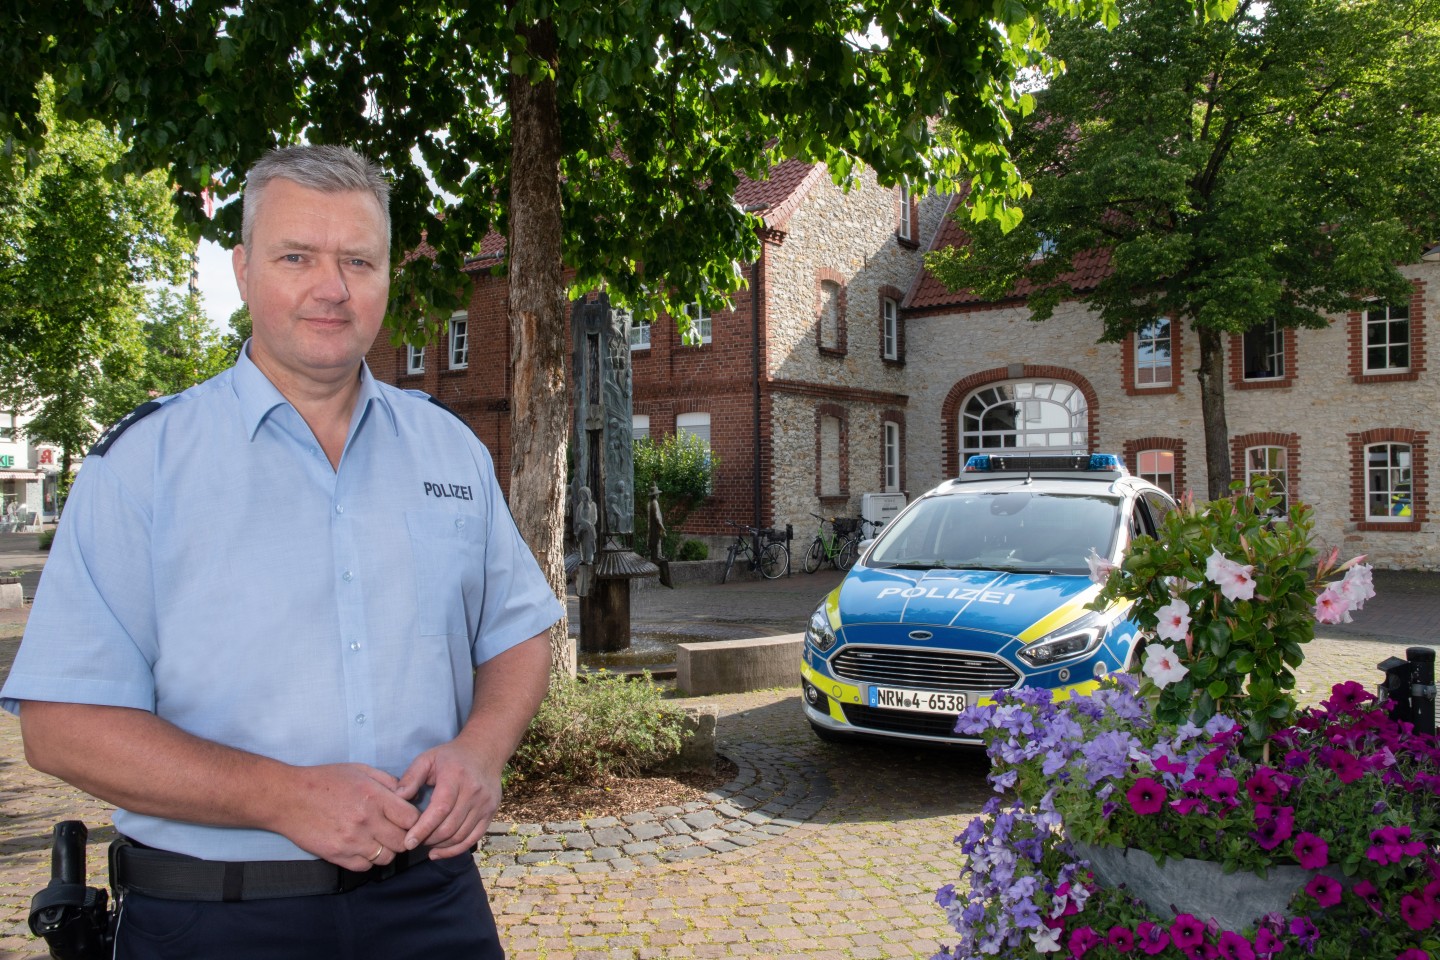 Foto: Polizei Lippe / Sonja Thelaner -  Sascha Lentzel ist neuer Kontaktbeamter für Jung & Alt in Schlangen. Lippe (ots)